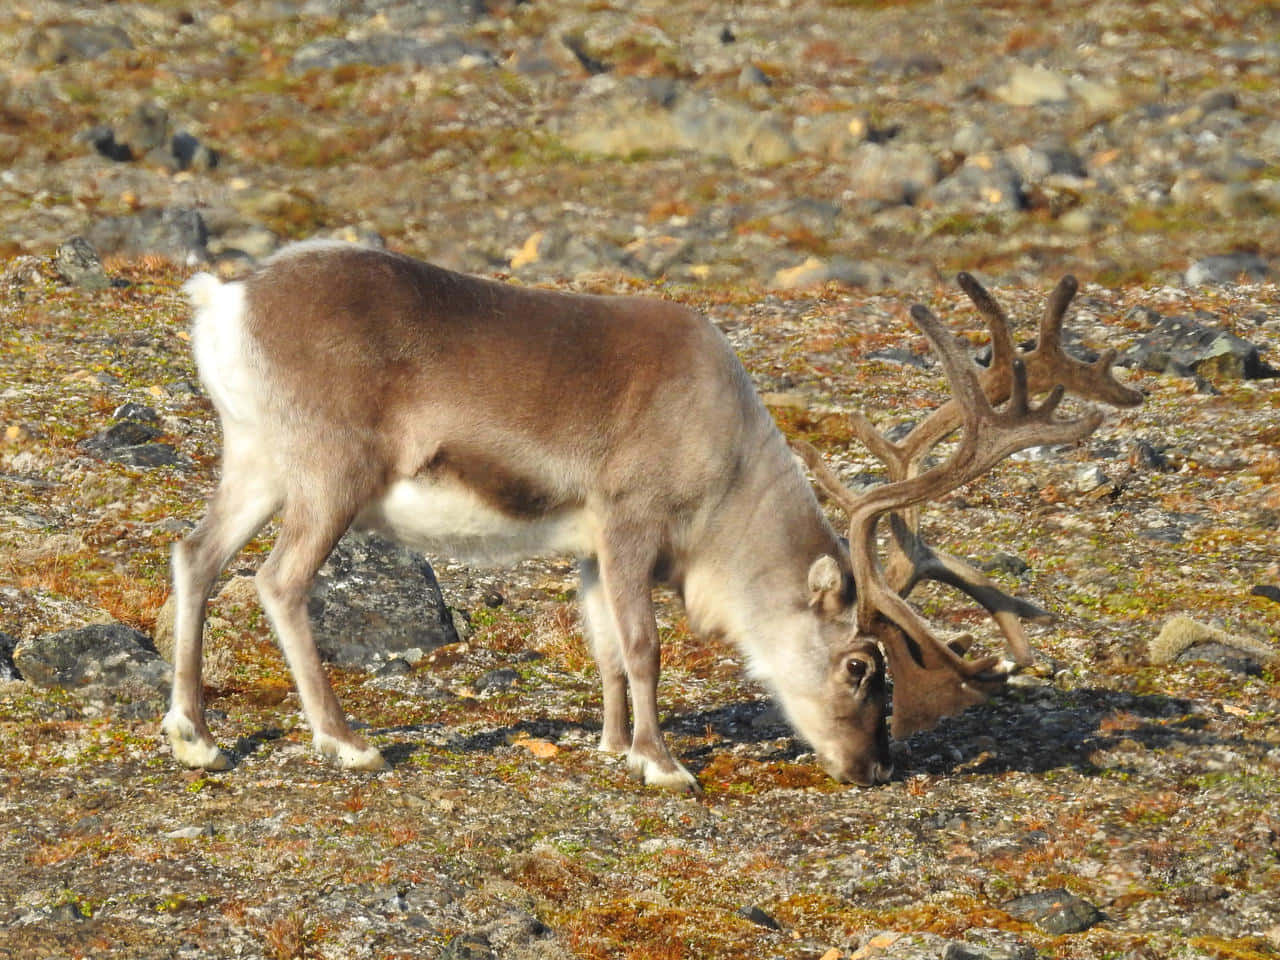 "A Giant Herd of Reindeer Roaming in The Arctic"